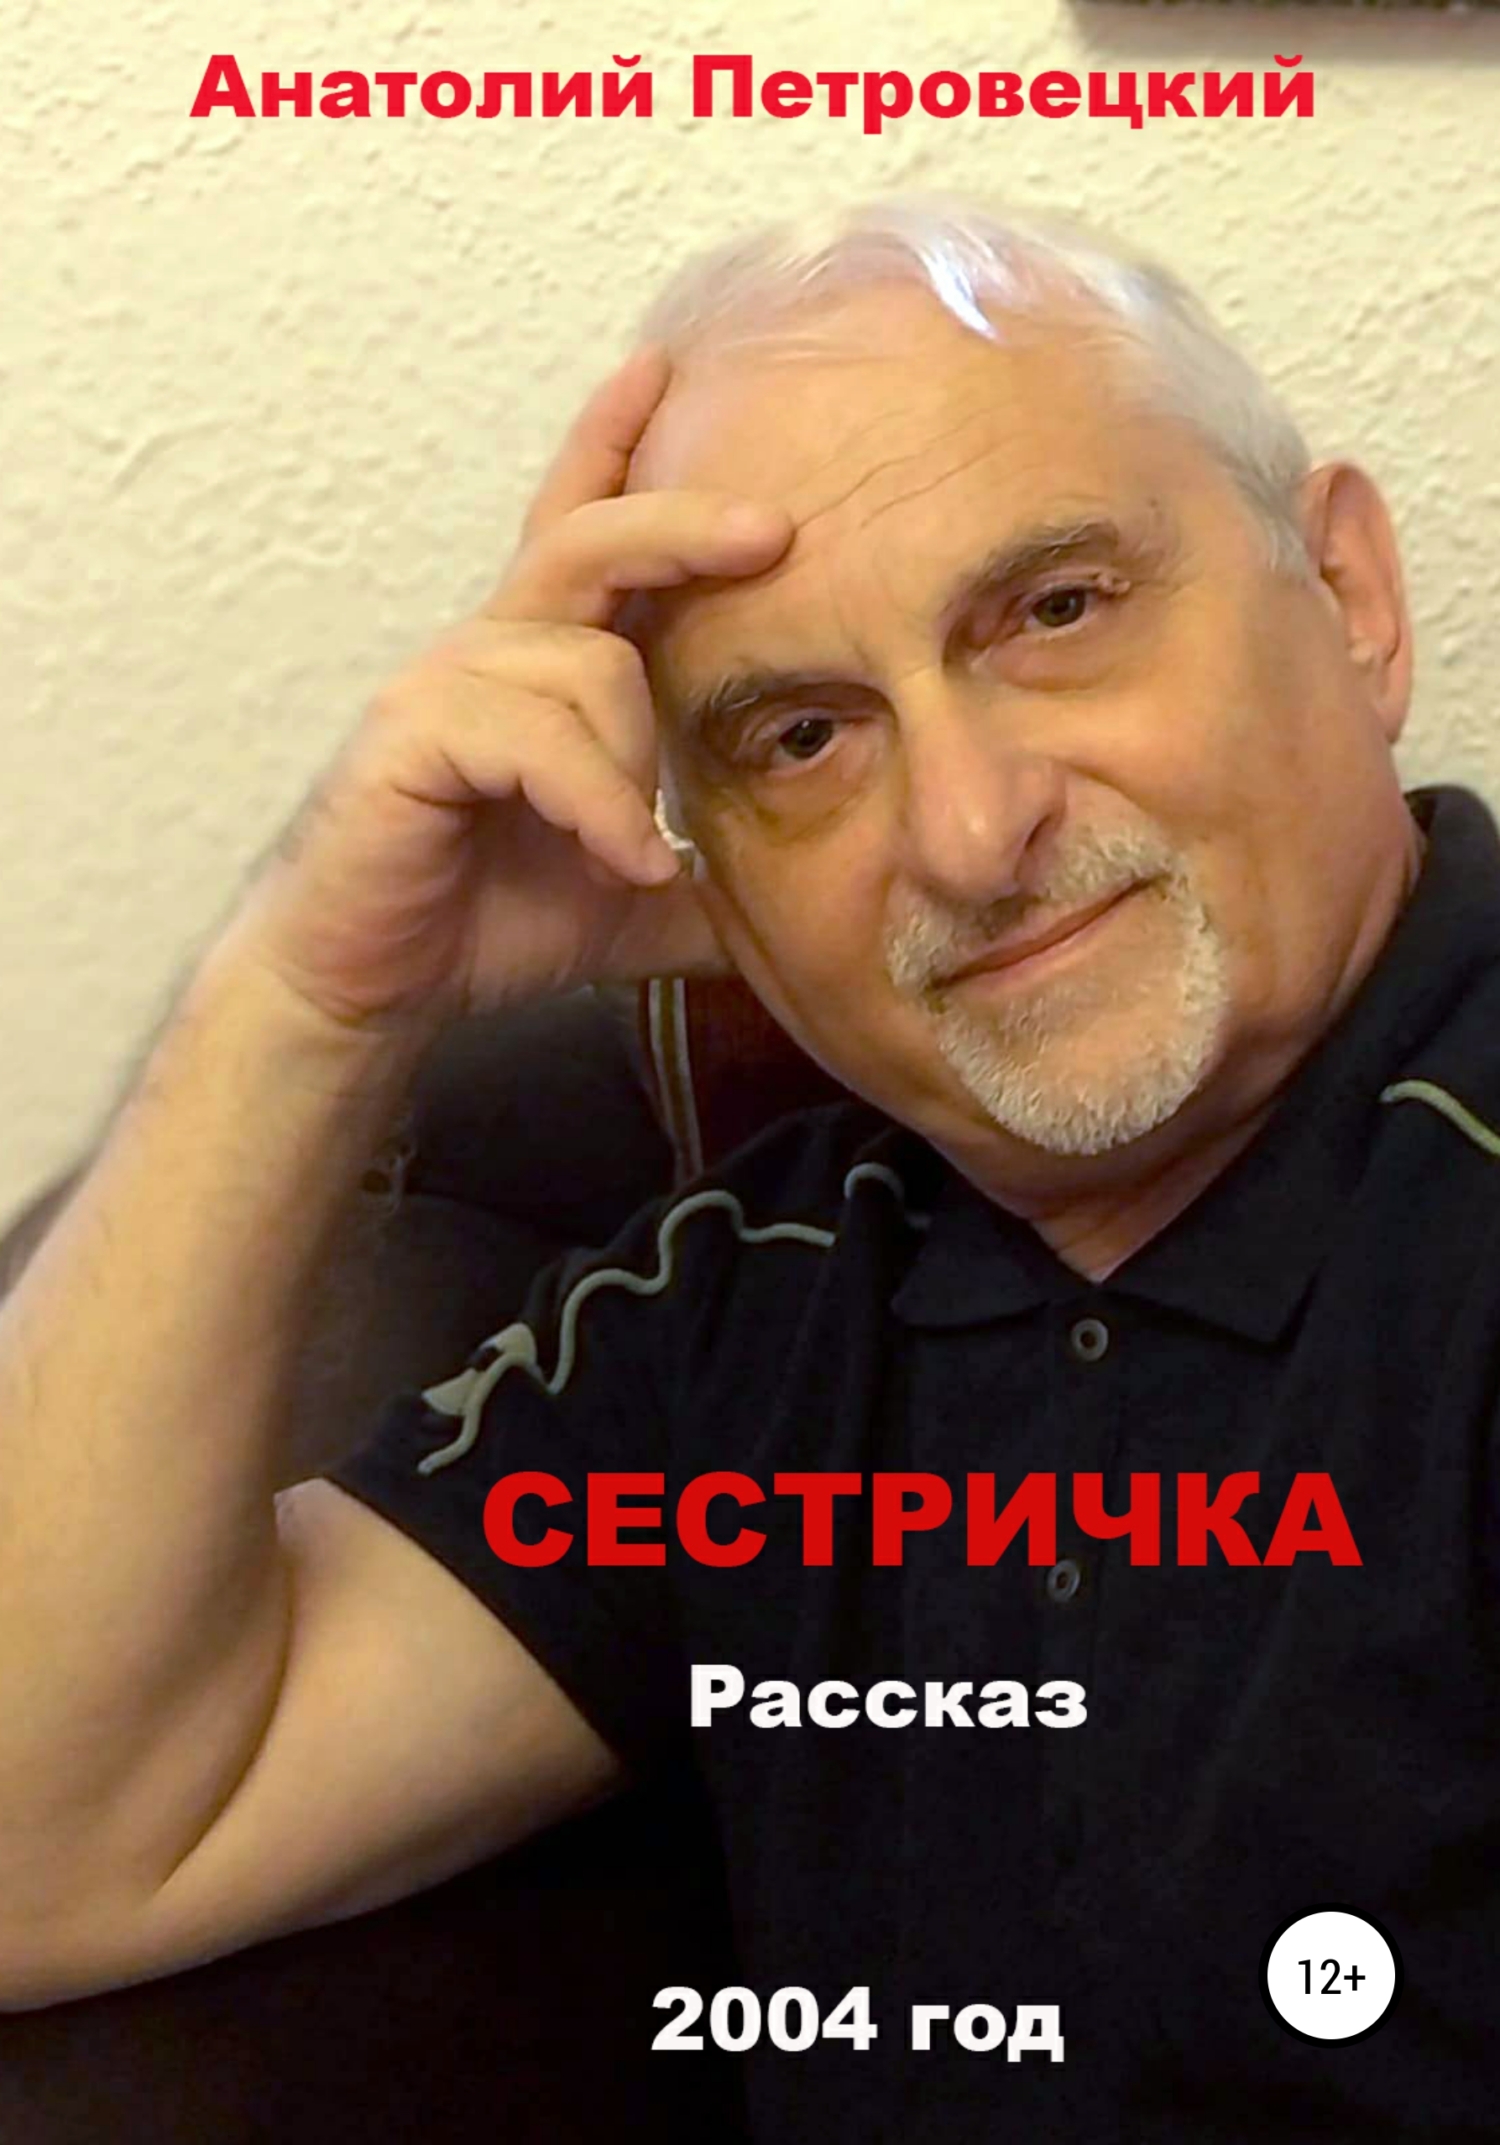 Сестричка - Анатолий Григорьевич Петровецкий